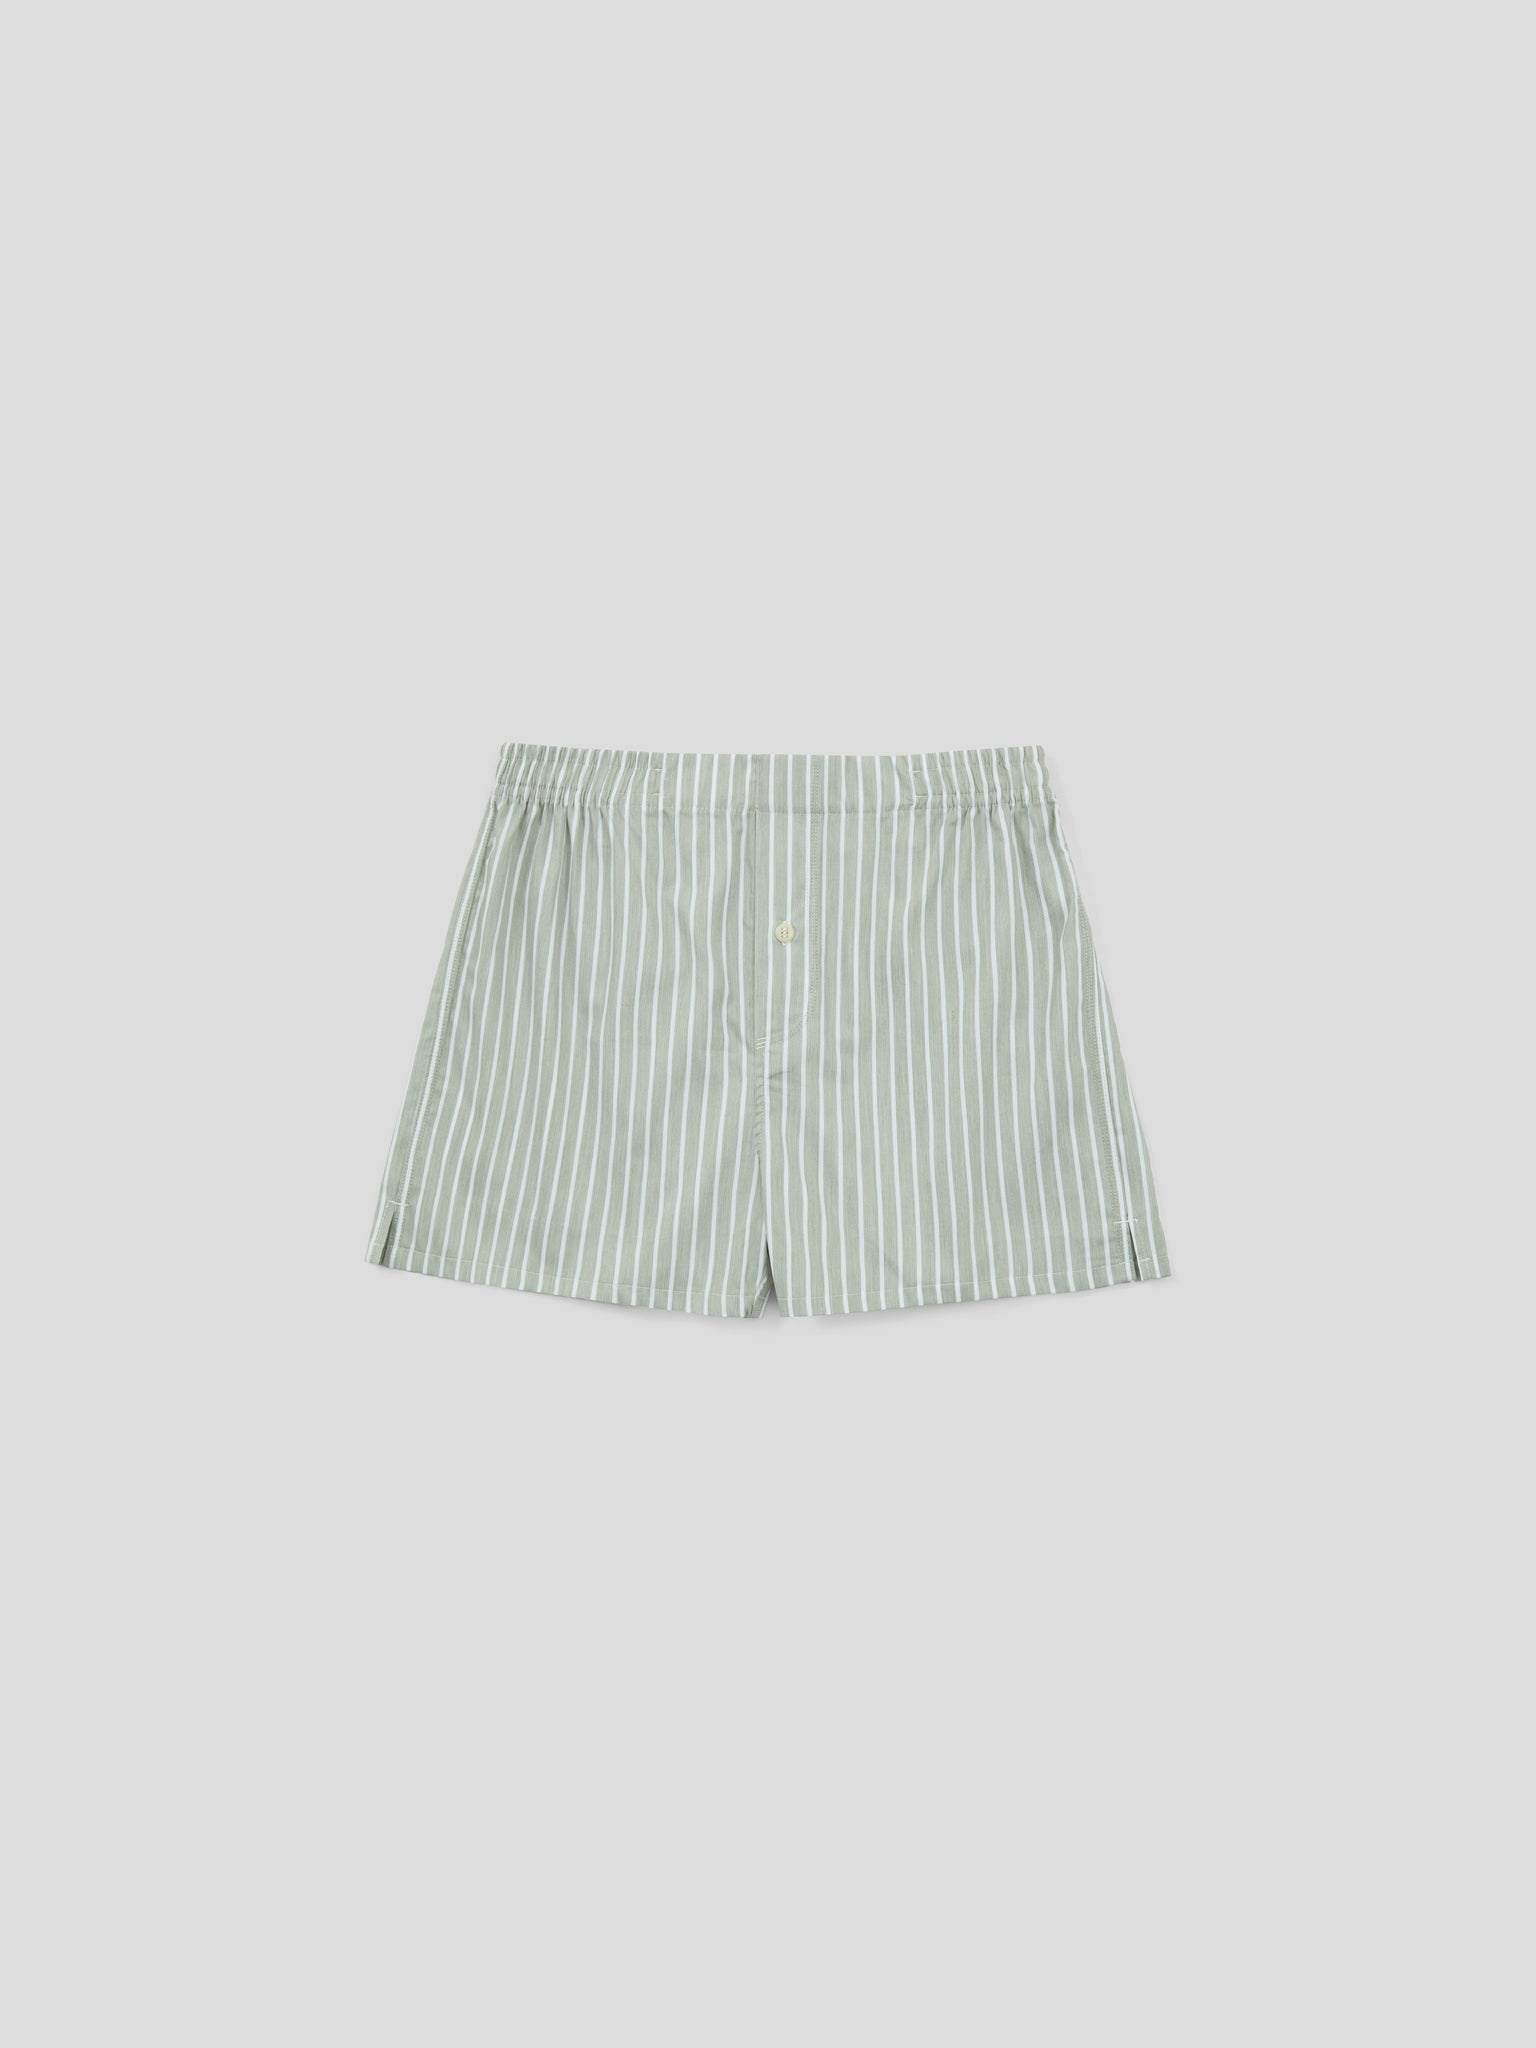 Boxer Short - Green Stripe Cotton